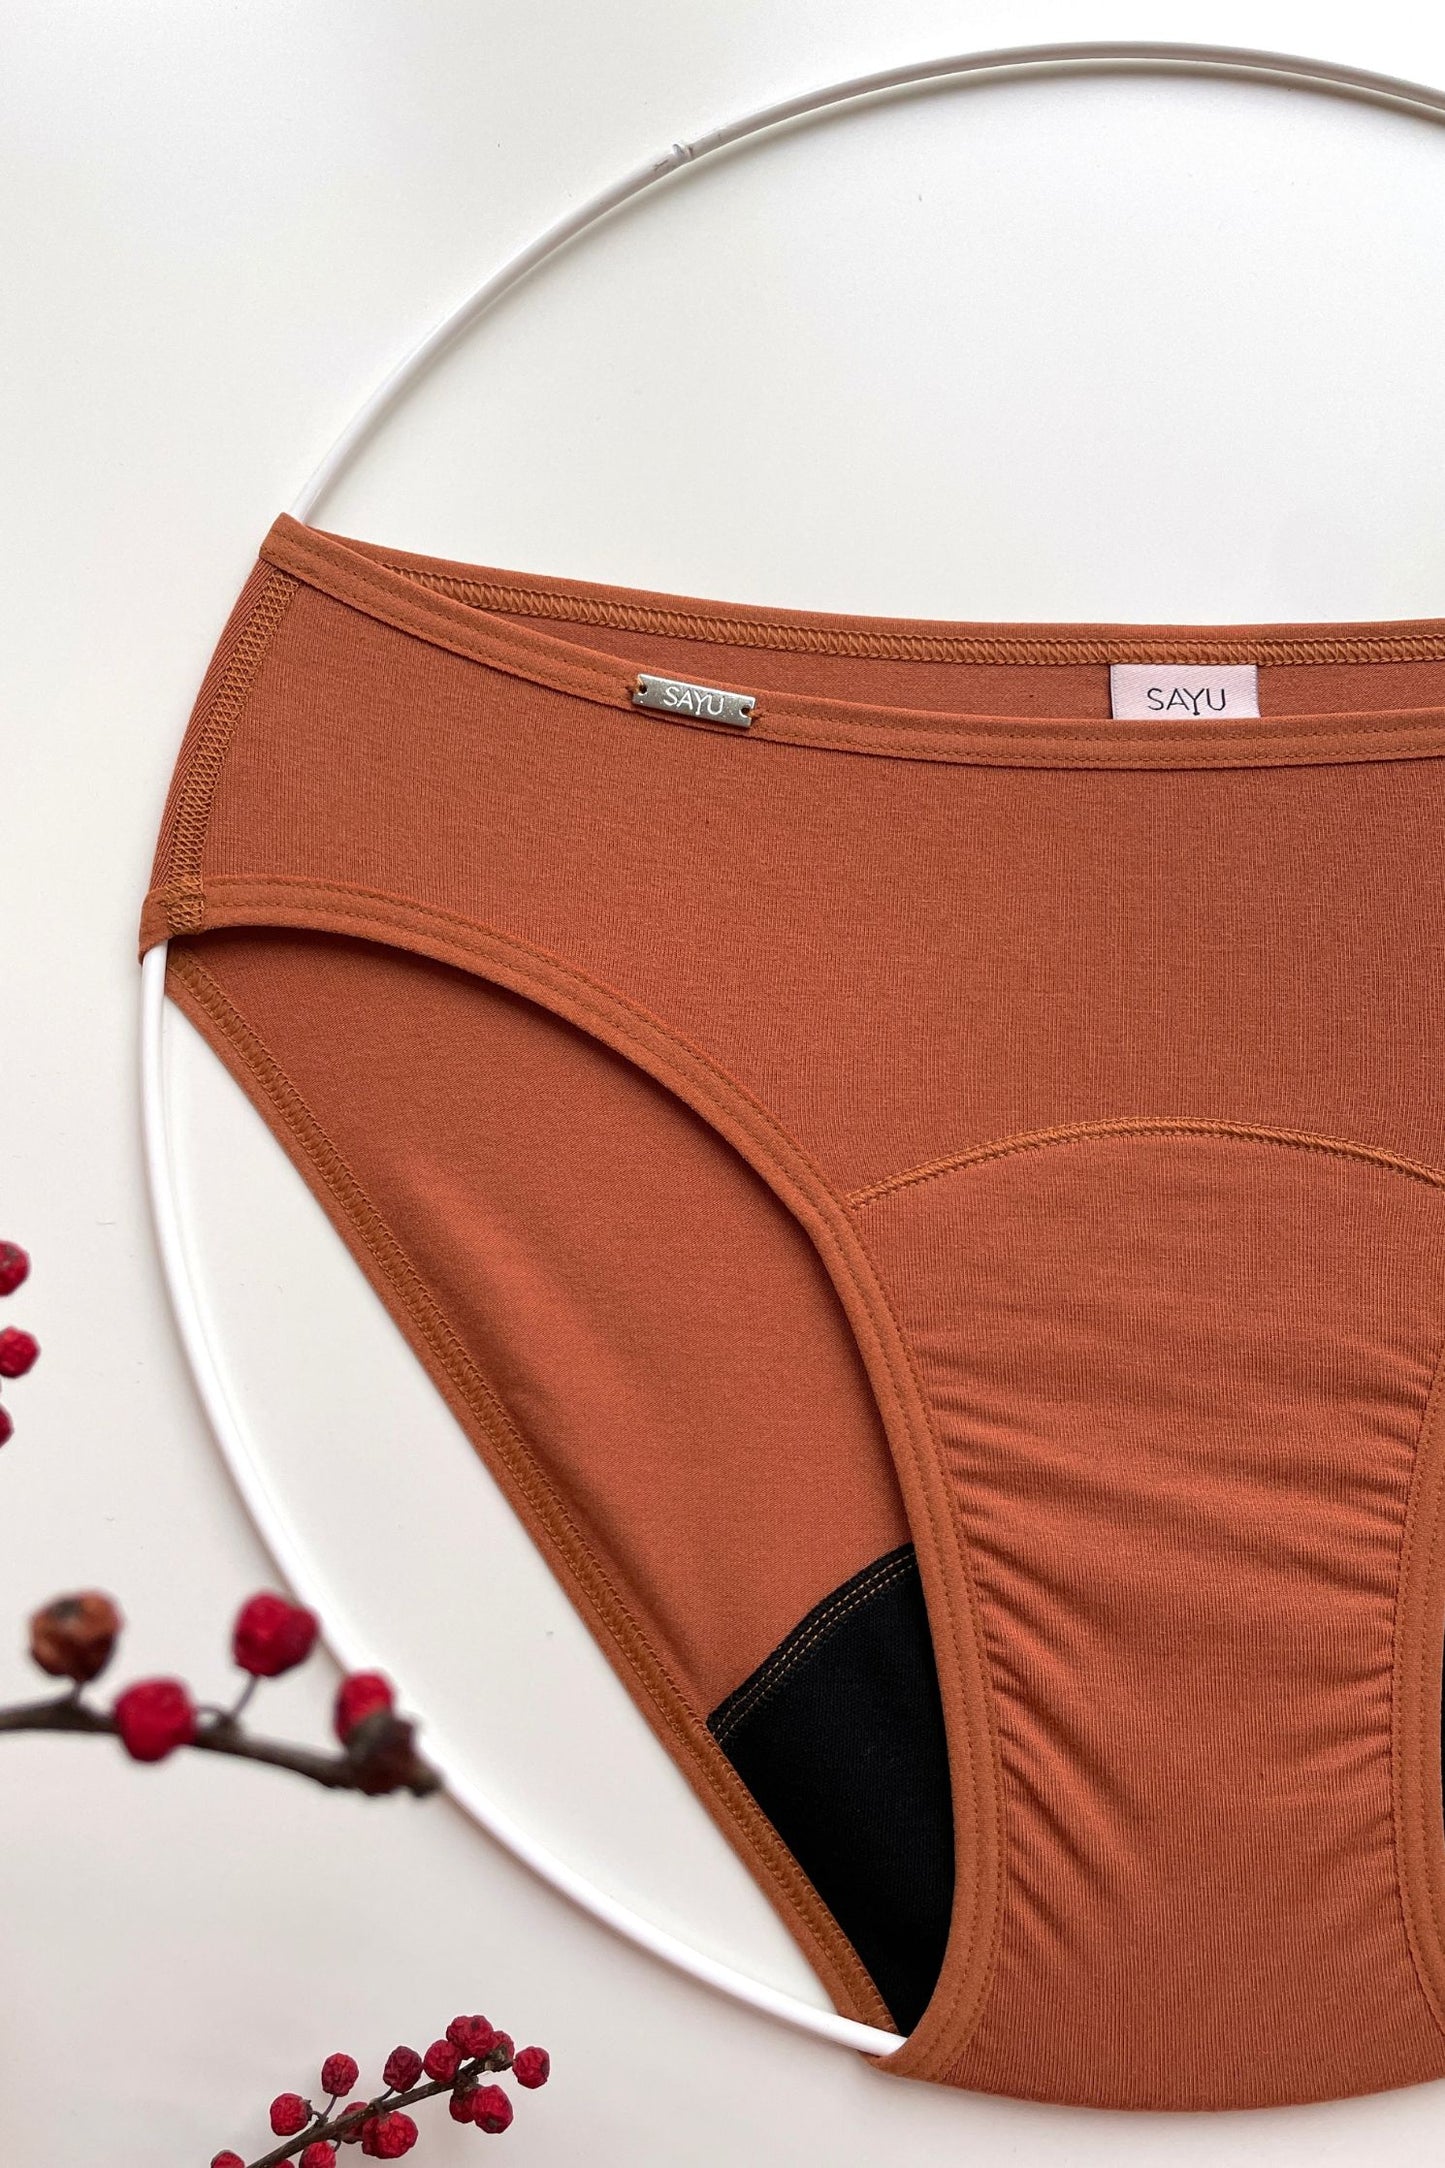 pohled ze předu na menstruační kalhotky SAYU v klasickém střihu, skořicová barva a nízká savost